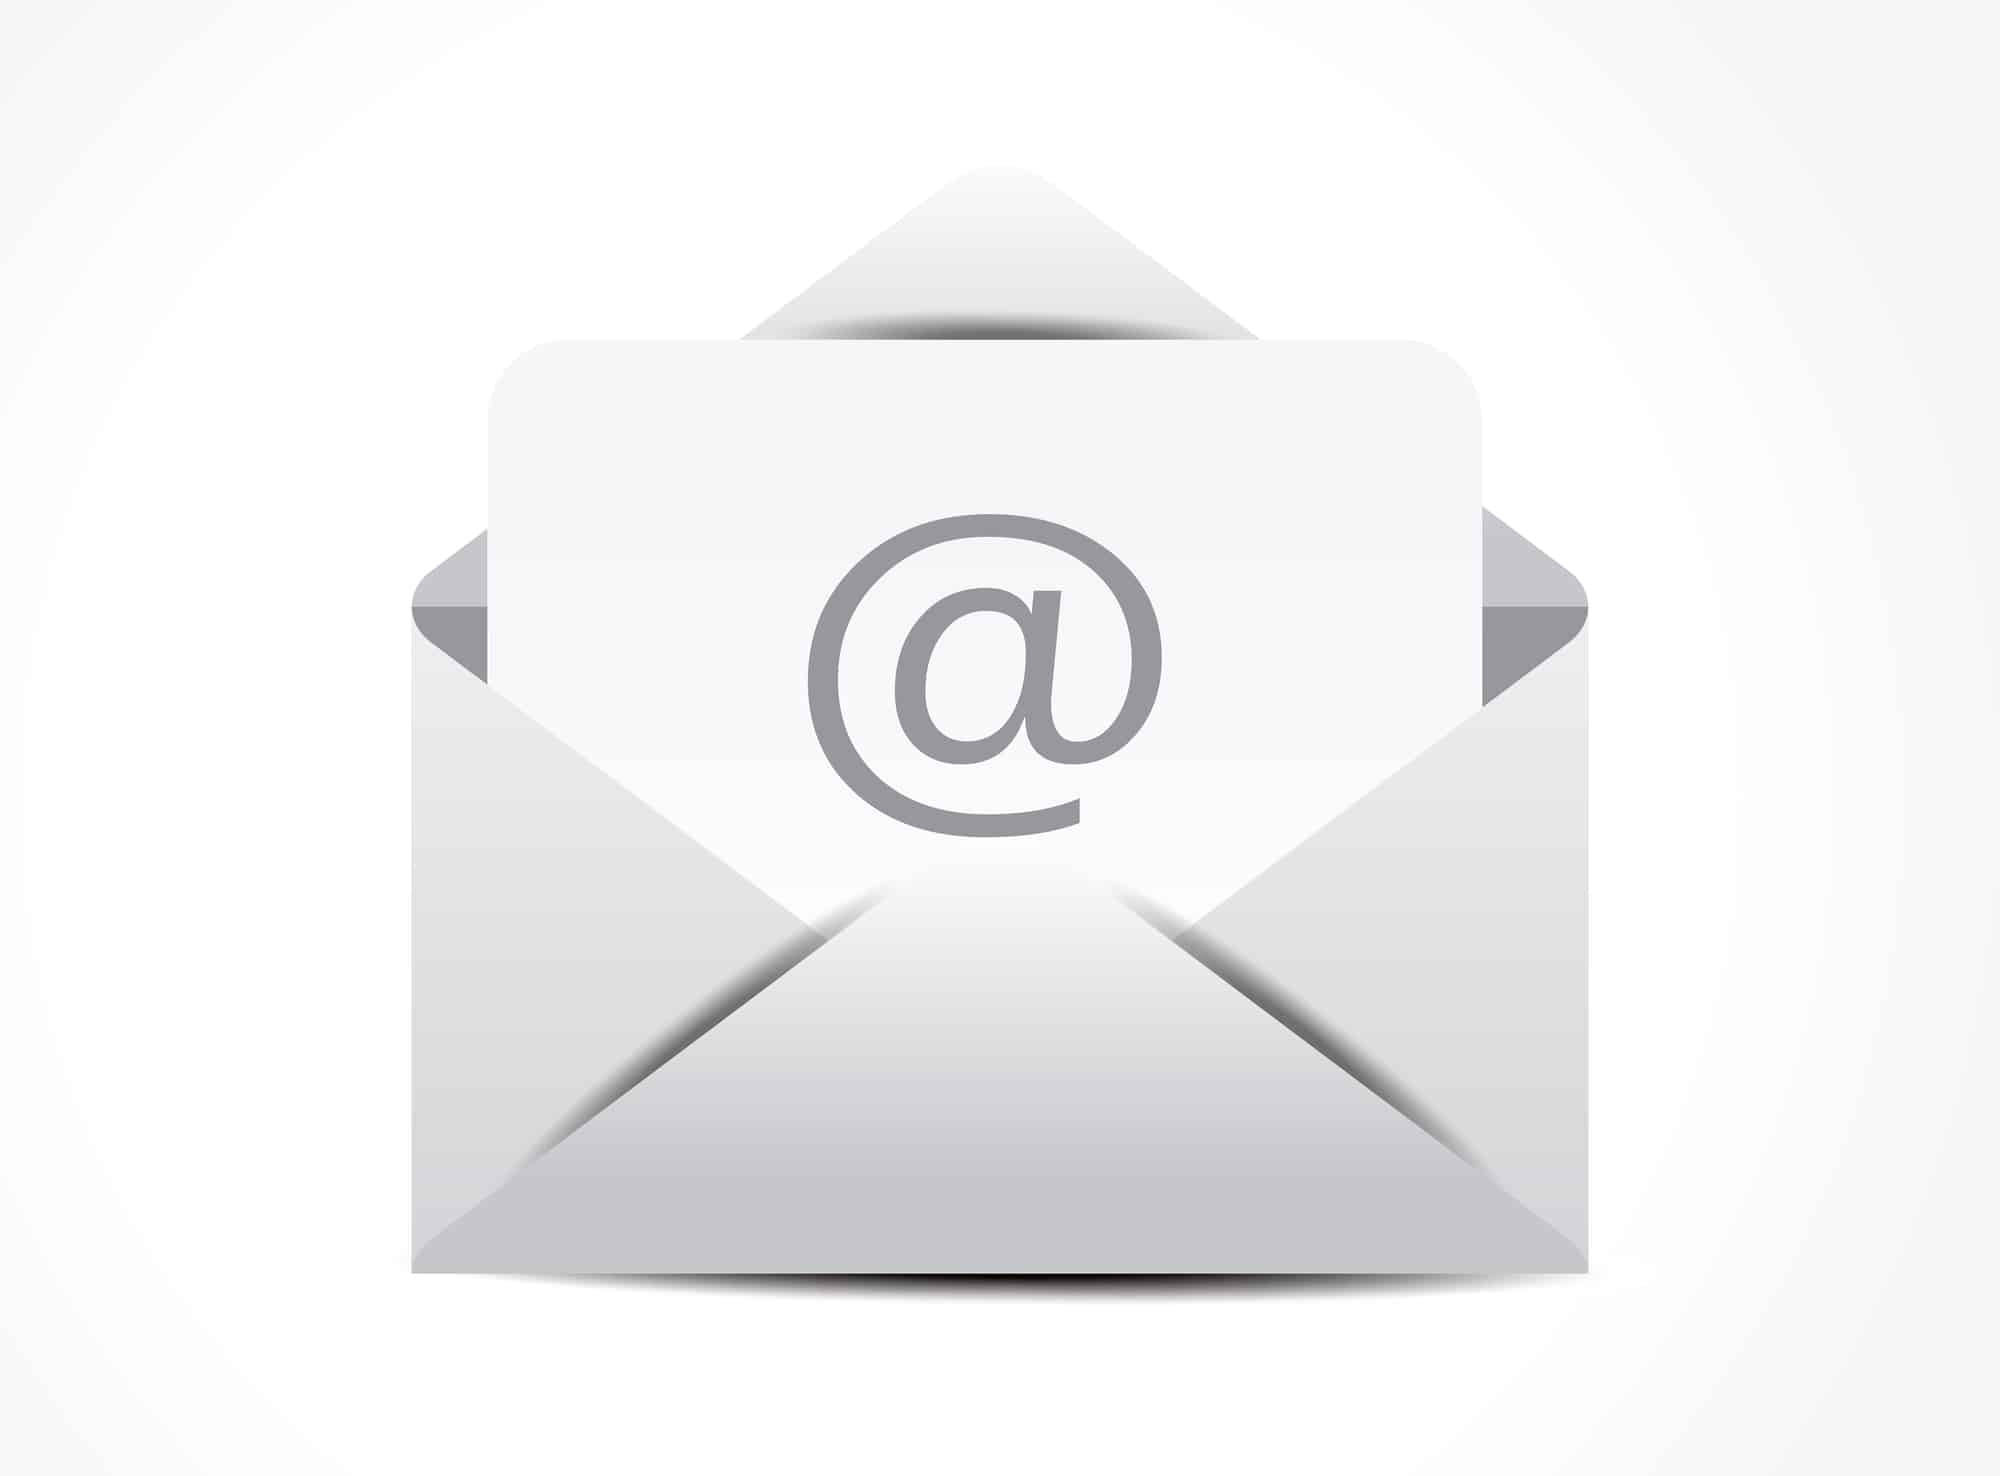 Come configurare Outlook attraverso un server proxy per visualizzare e scaricare i messaggi di posta elettronica